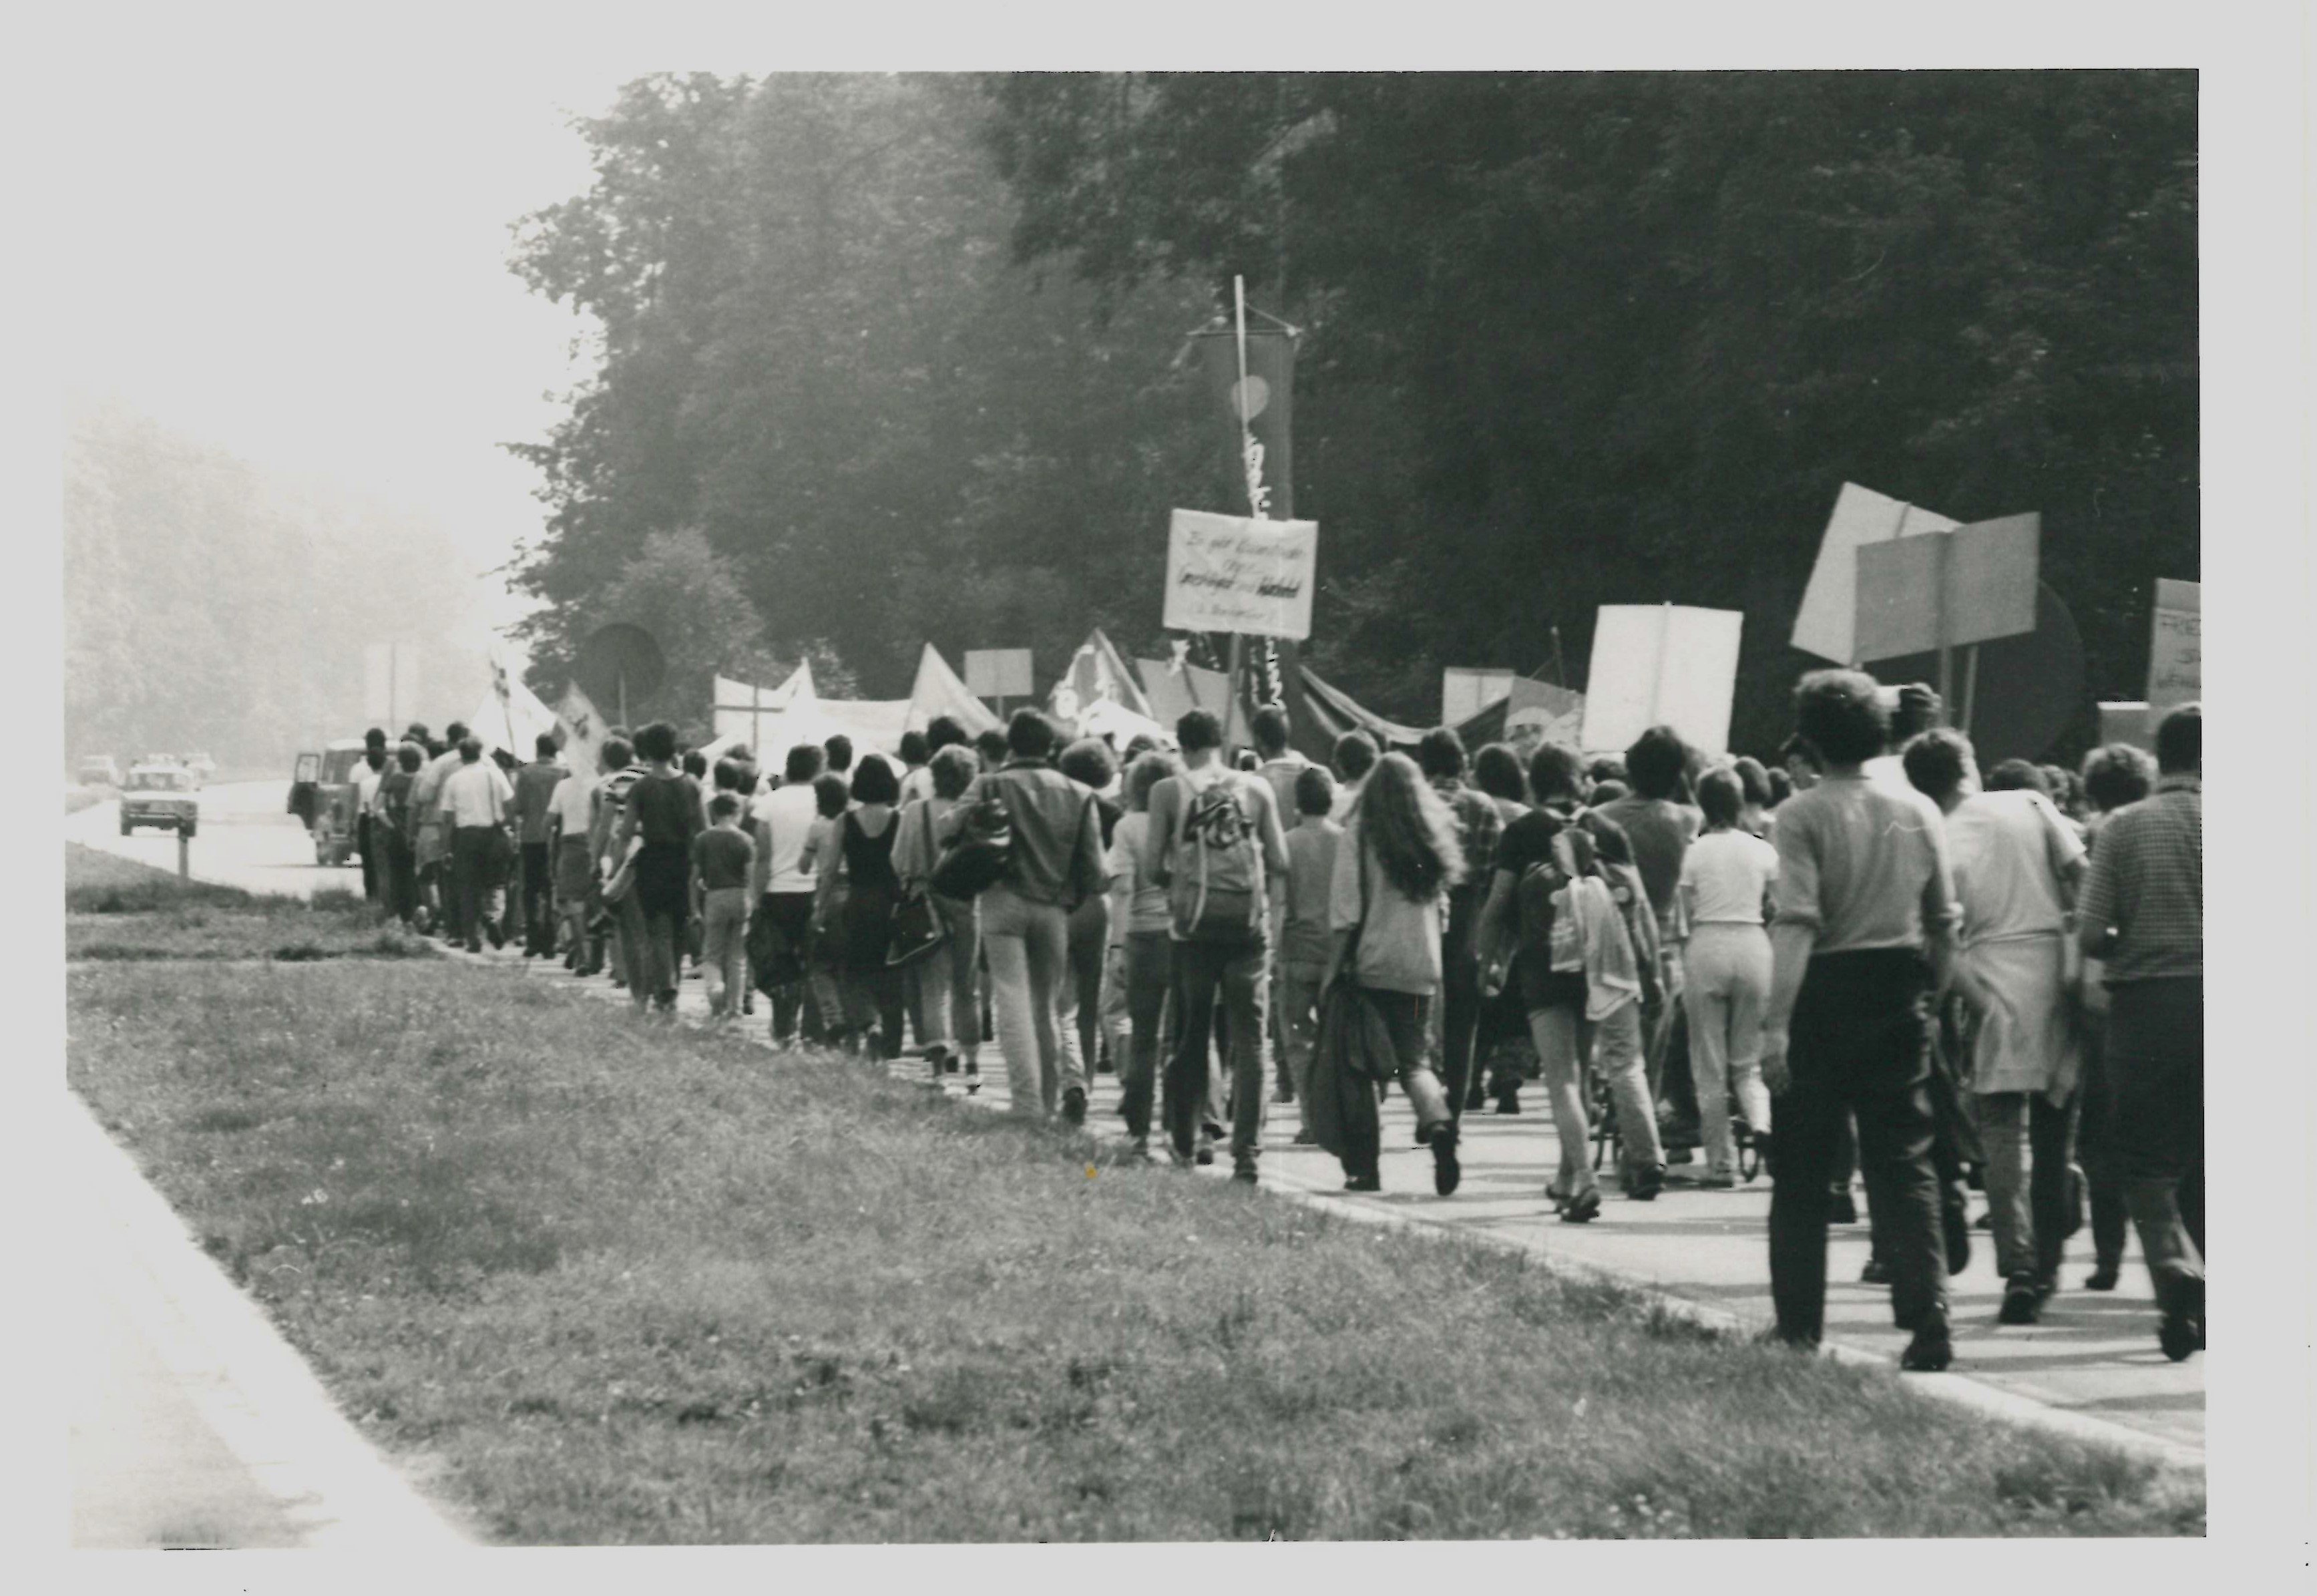 Olof-Palme-Marsch 1987: Demonstrationszug auf einer Landstraße (DDR Geschichtsmuseum im Dokumentationszentrum Perleberg CC BY-SA)